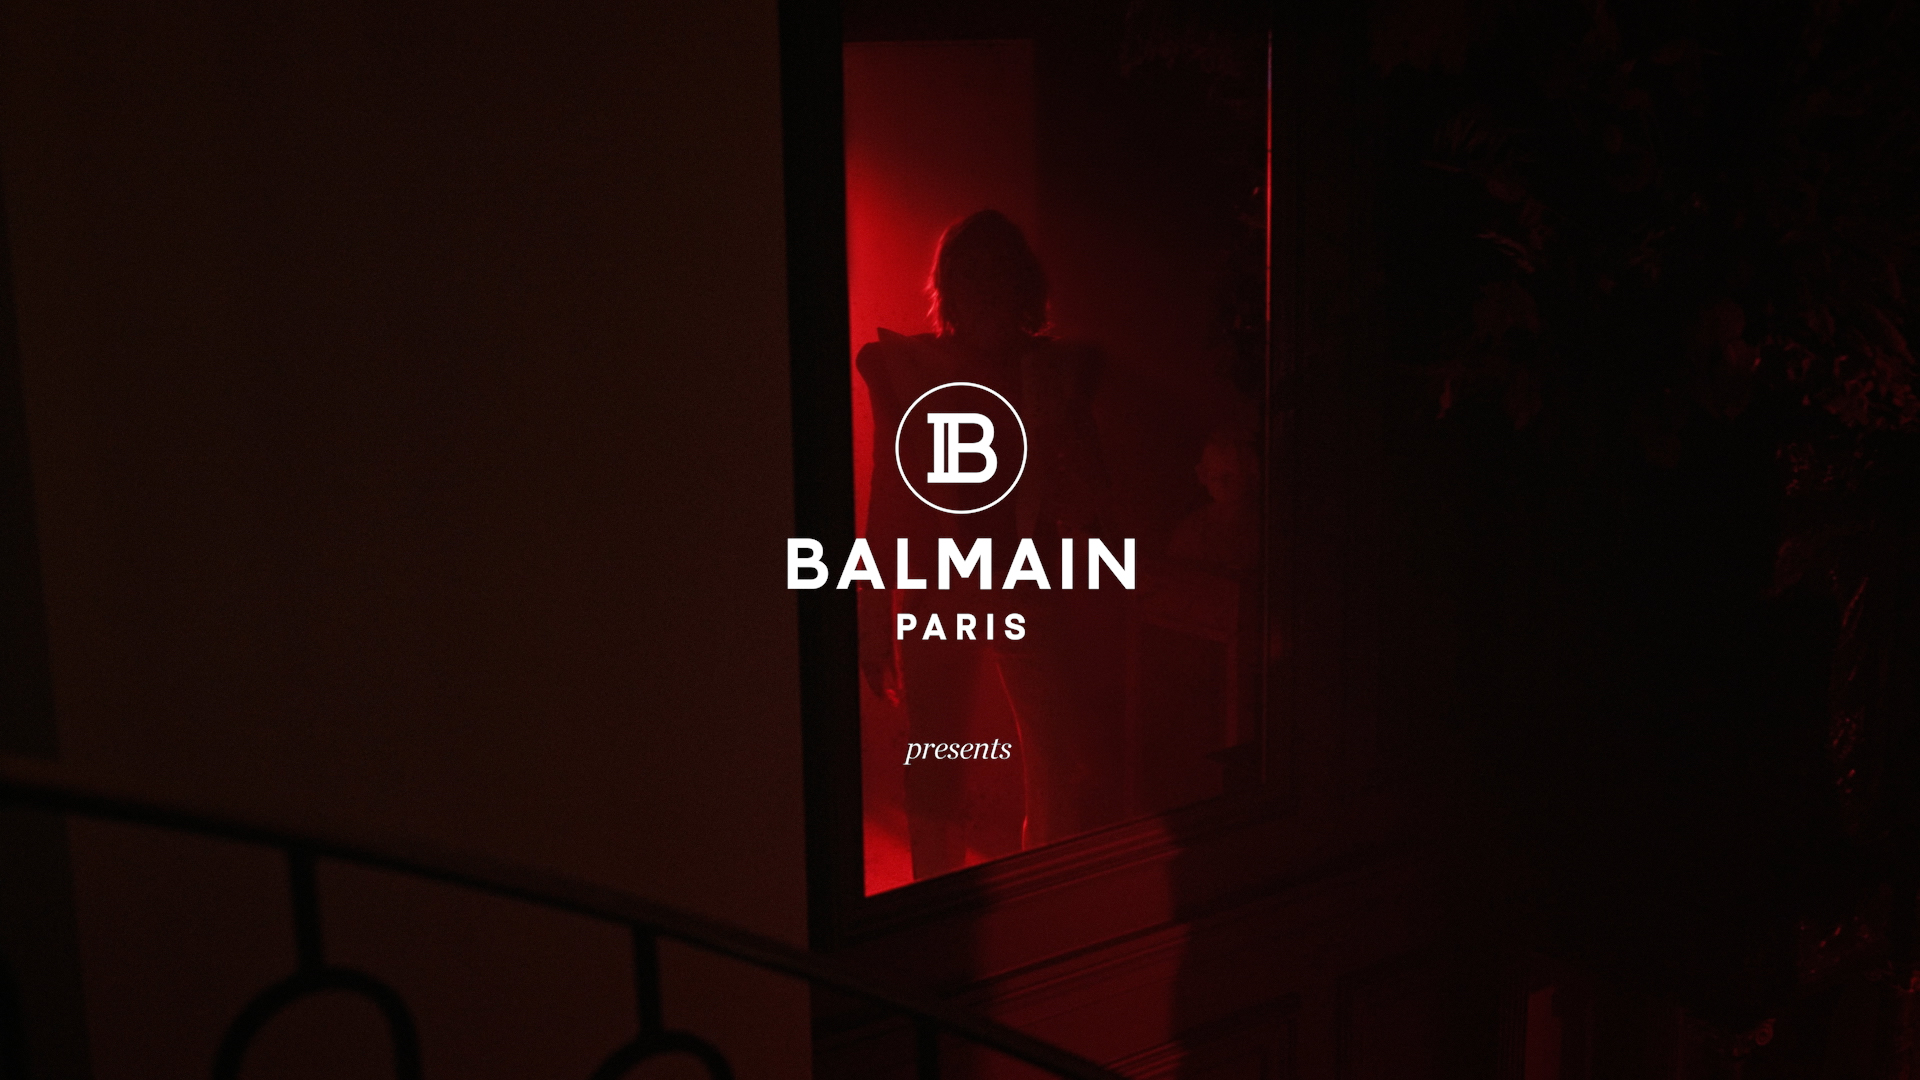 BALMAIN PARIS | KANAMÉ ONOYAMA